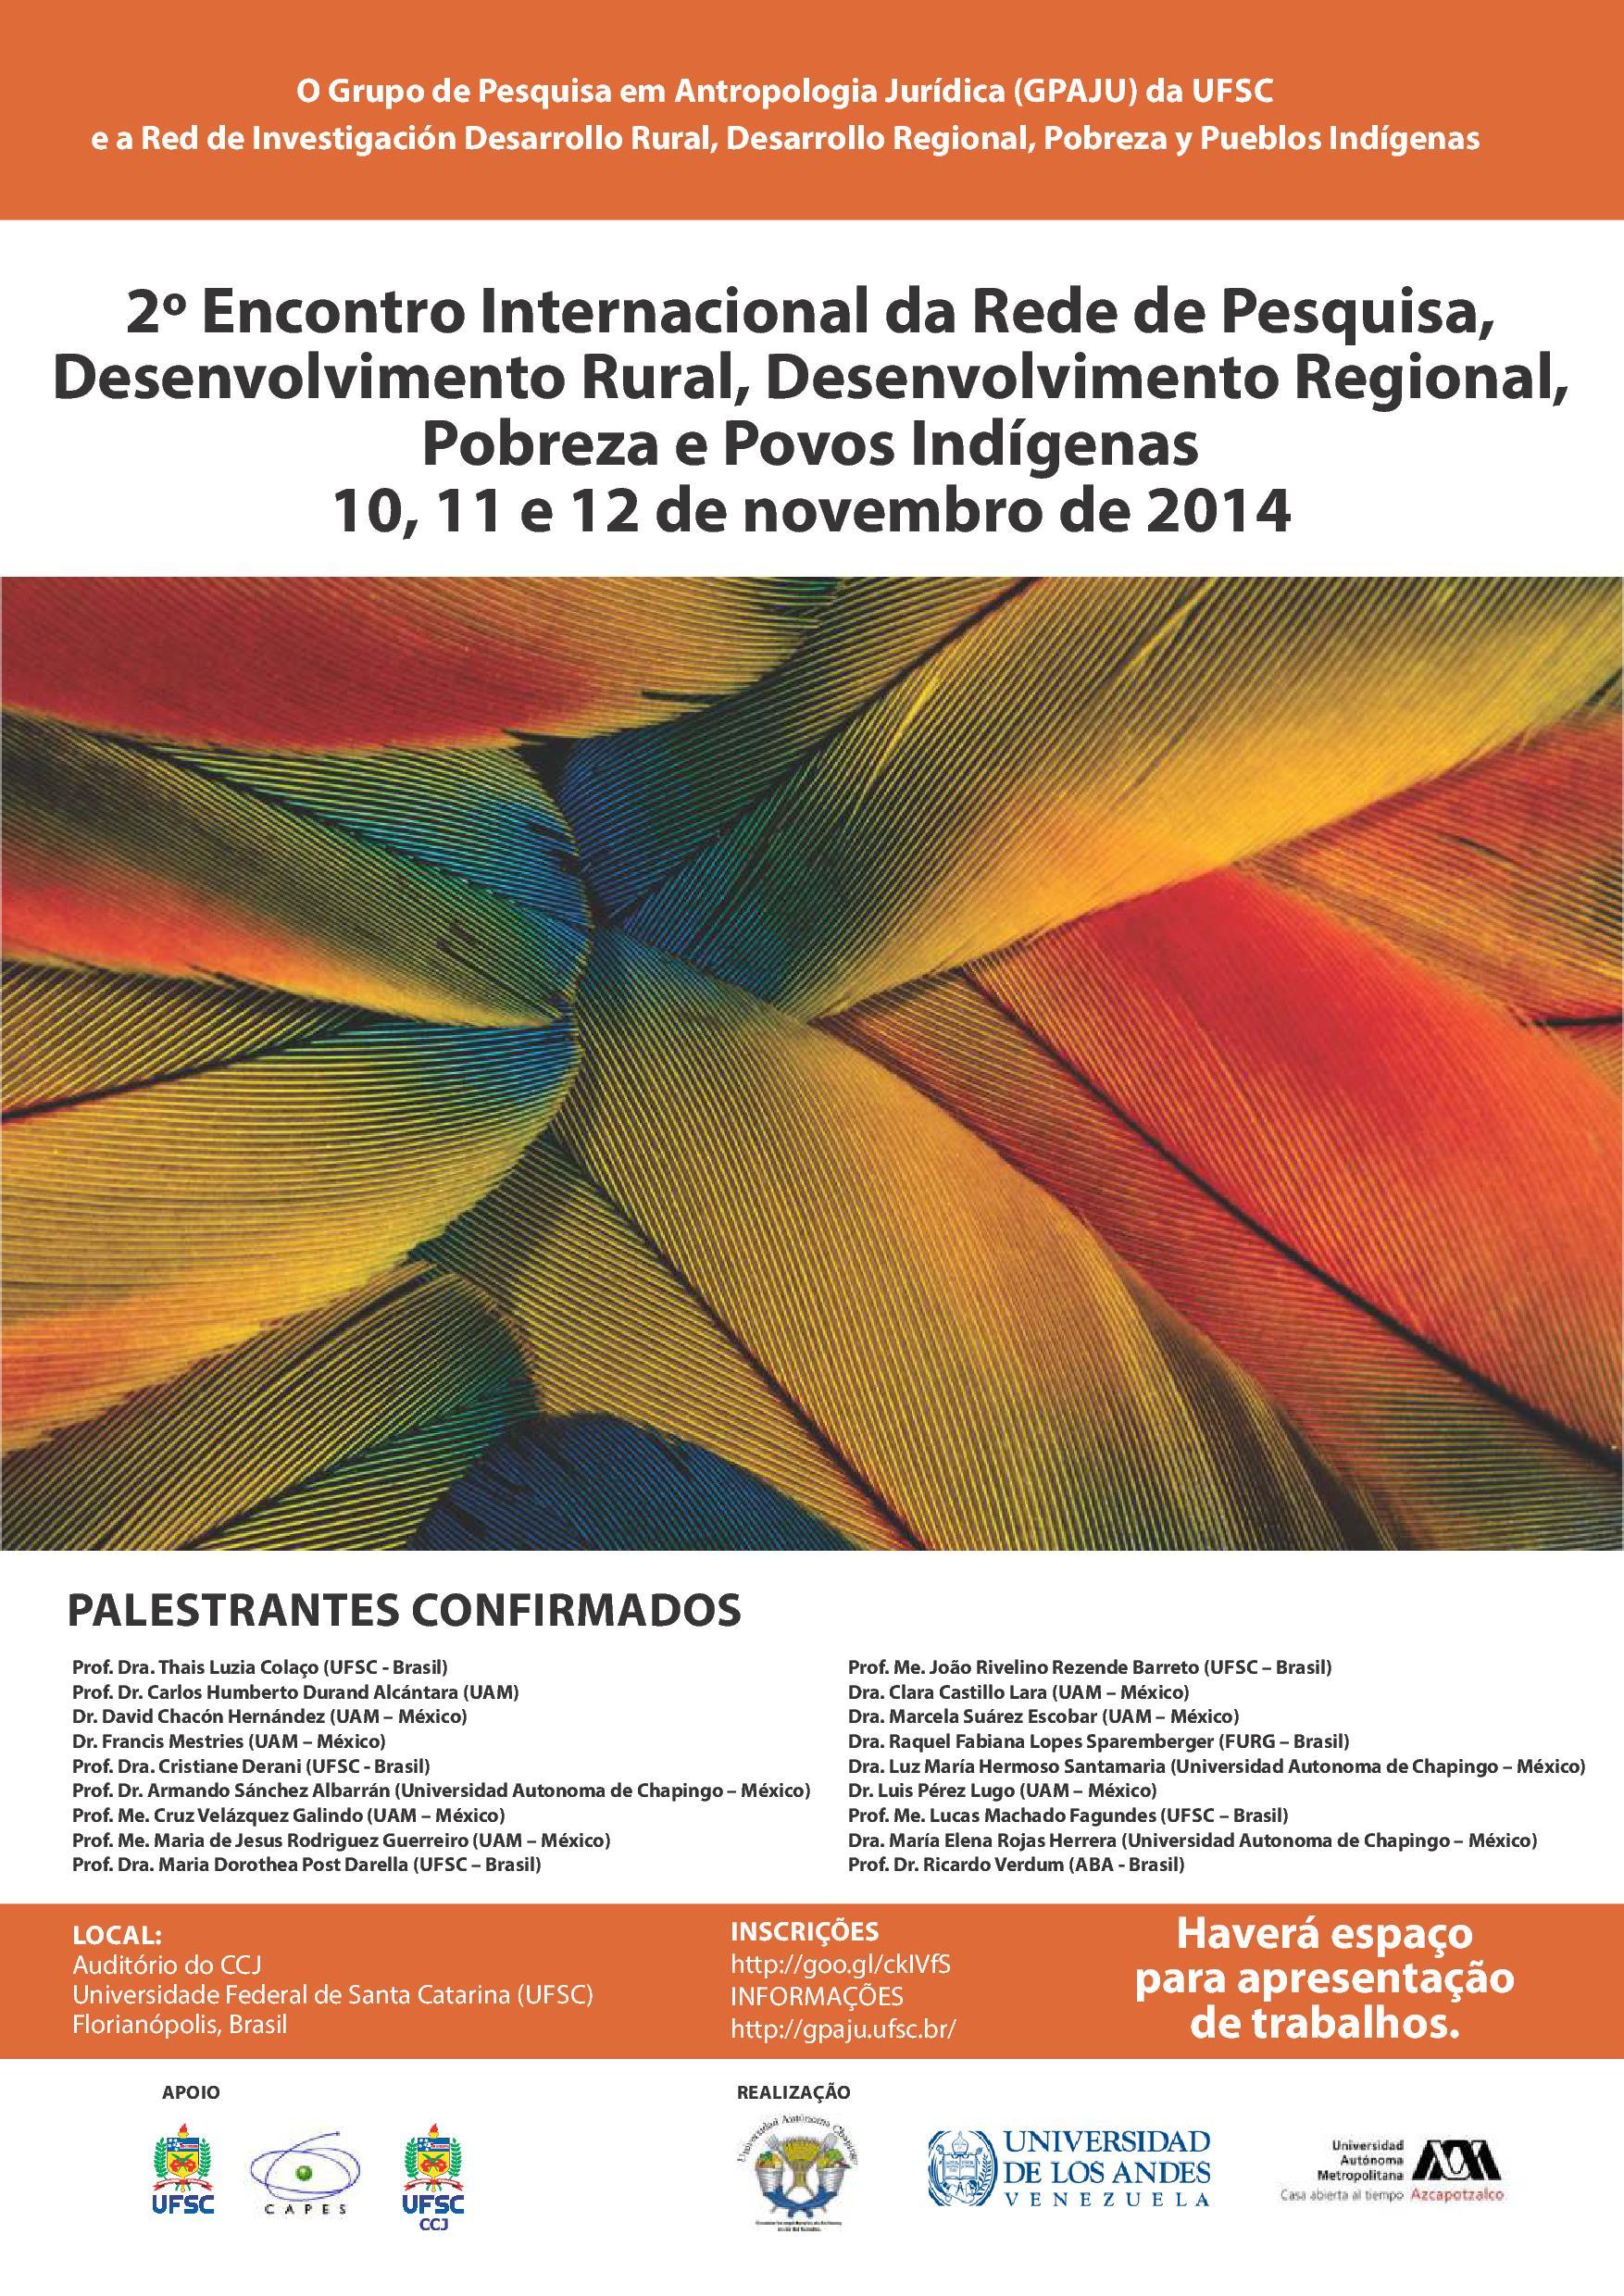 2º Encontro Internacional da Rede de Pesquisa Desenvolvimento Rural, Desenvolvimento Regional, Pobreza e Povos Indígenas